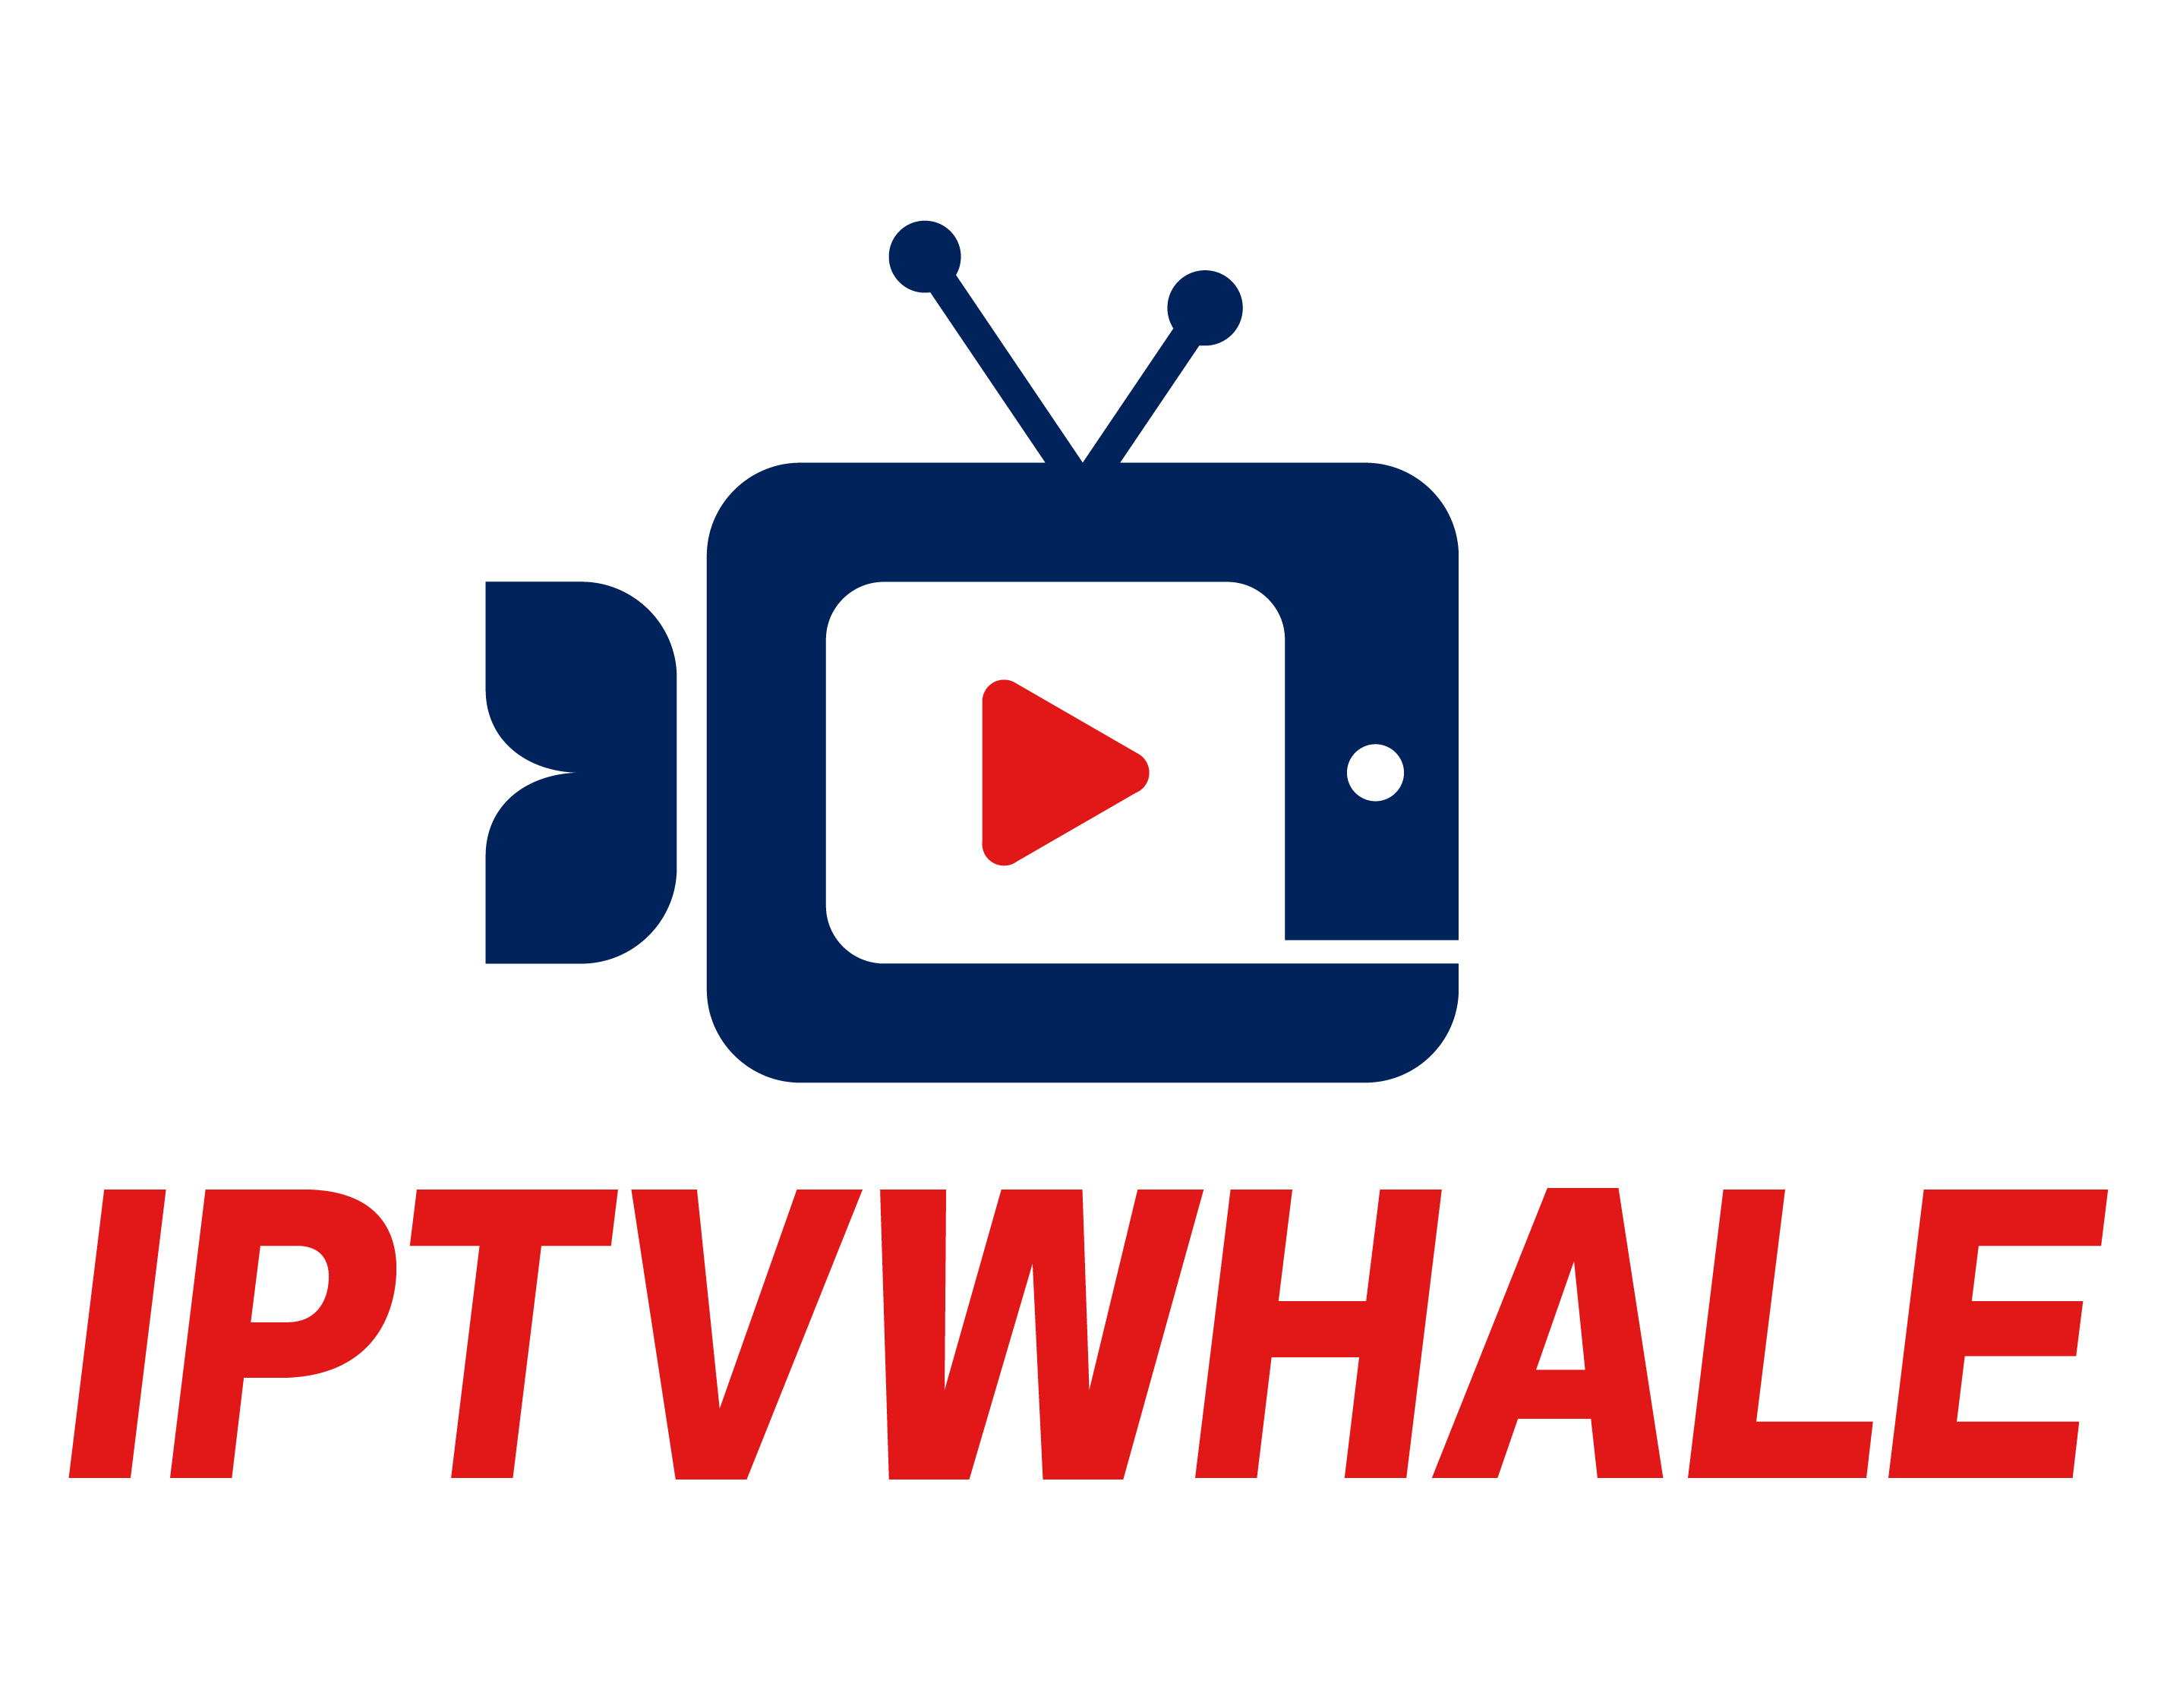 IPTV WHALE